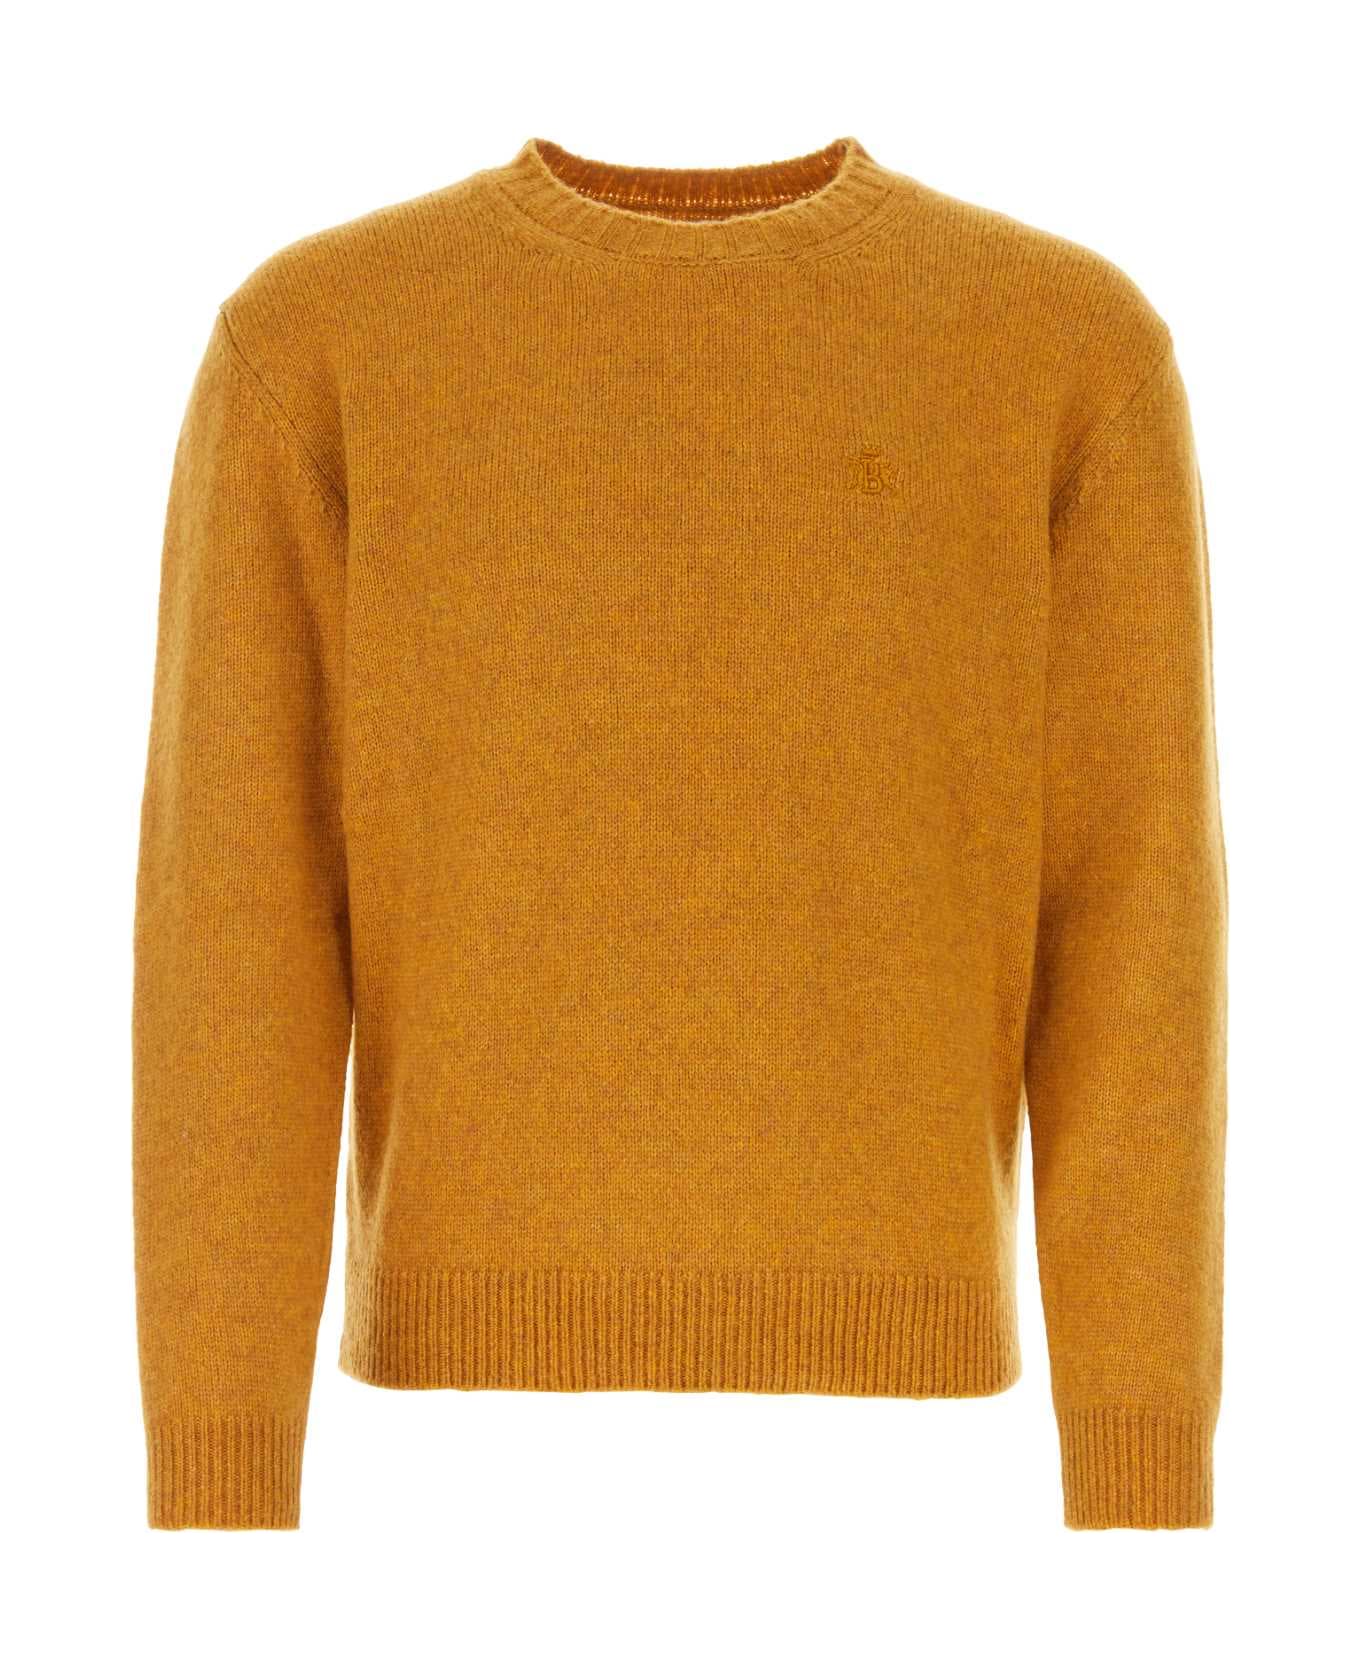 Baracuta Ochre Virgin Wool Blend Sweater - OCHRE